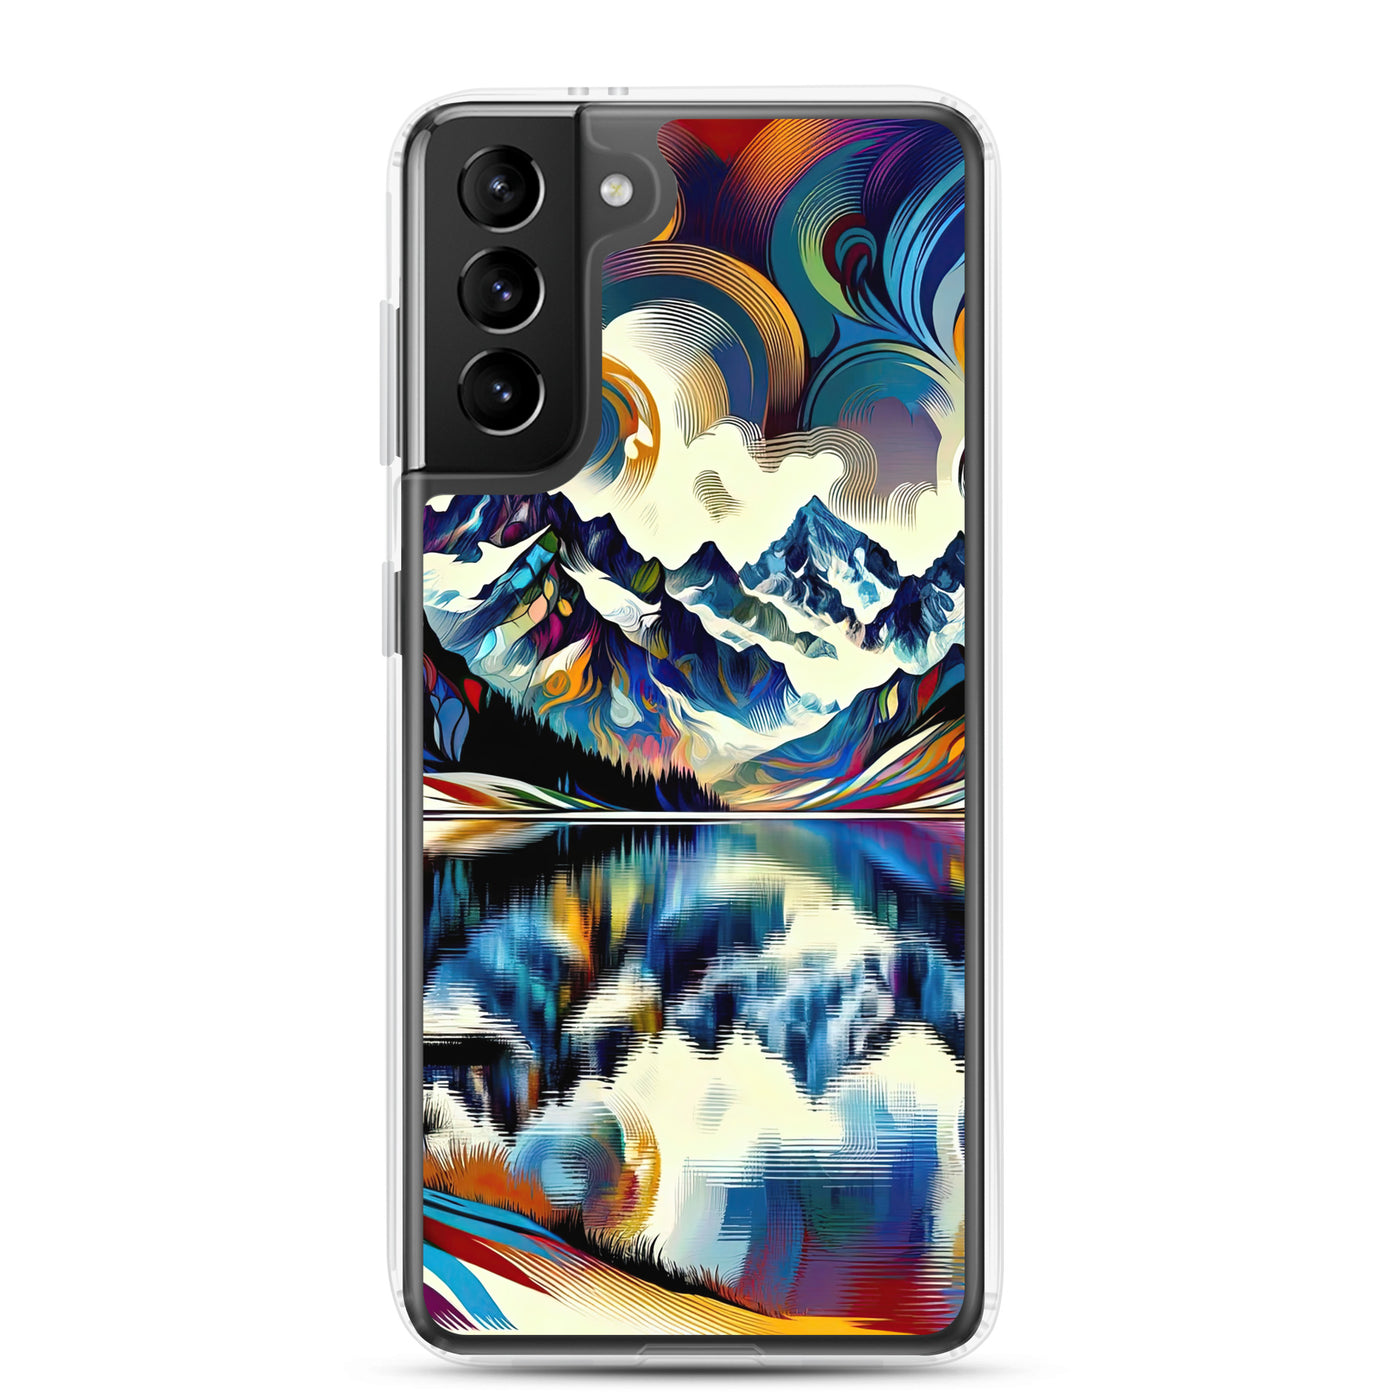 Alpensee im Zentrum eines abstrakt-expressionistischen Alpen-Kunstwerks - Samsung Schutzhülle (durchsichtig) berge xxx yyy zzz Samsung Galaxy S21 Plus